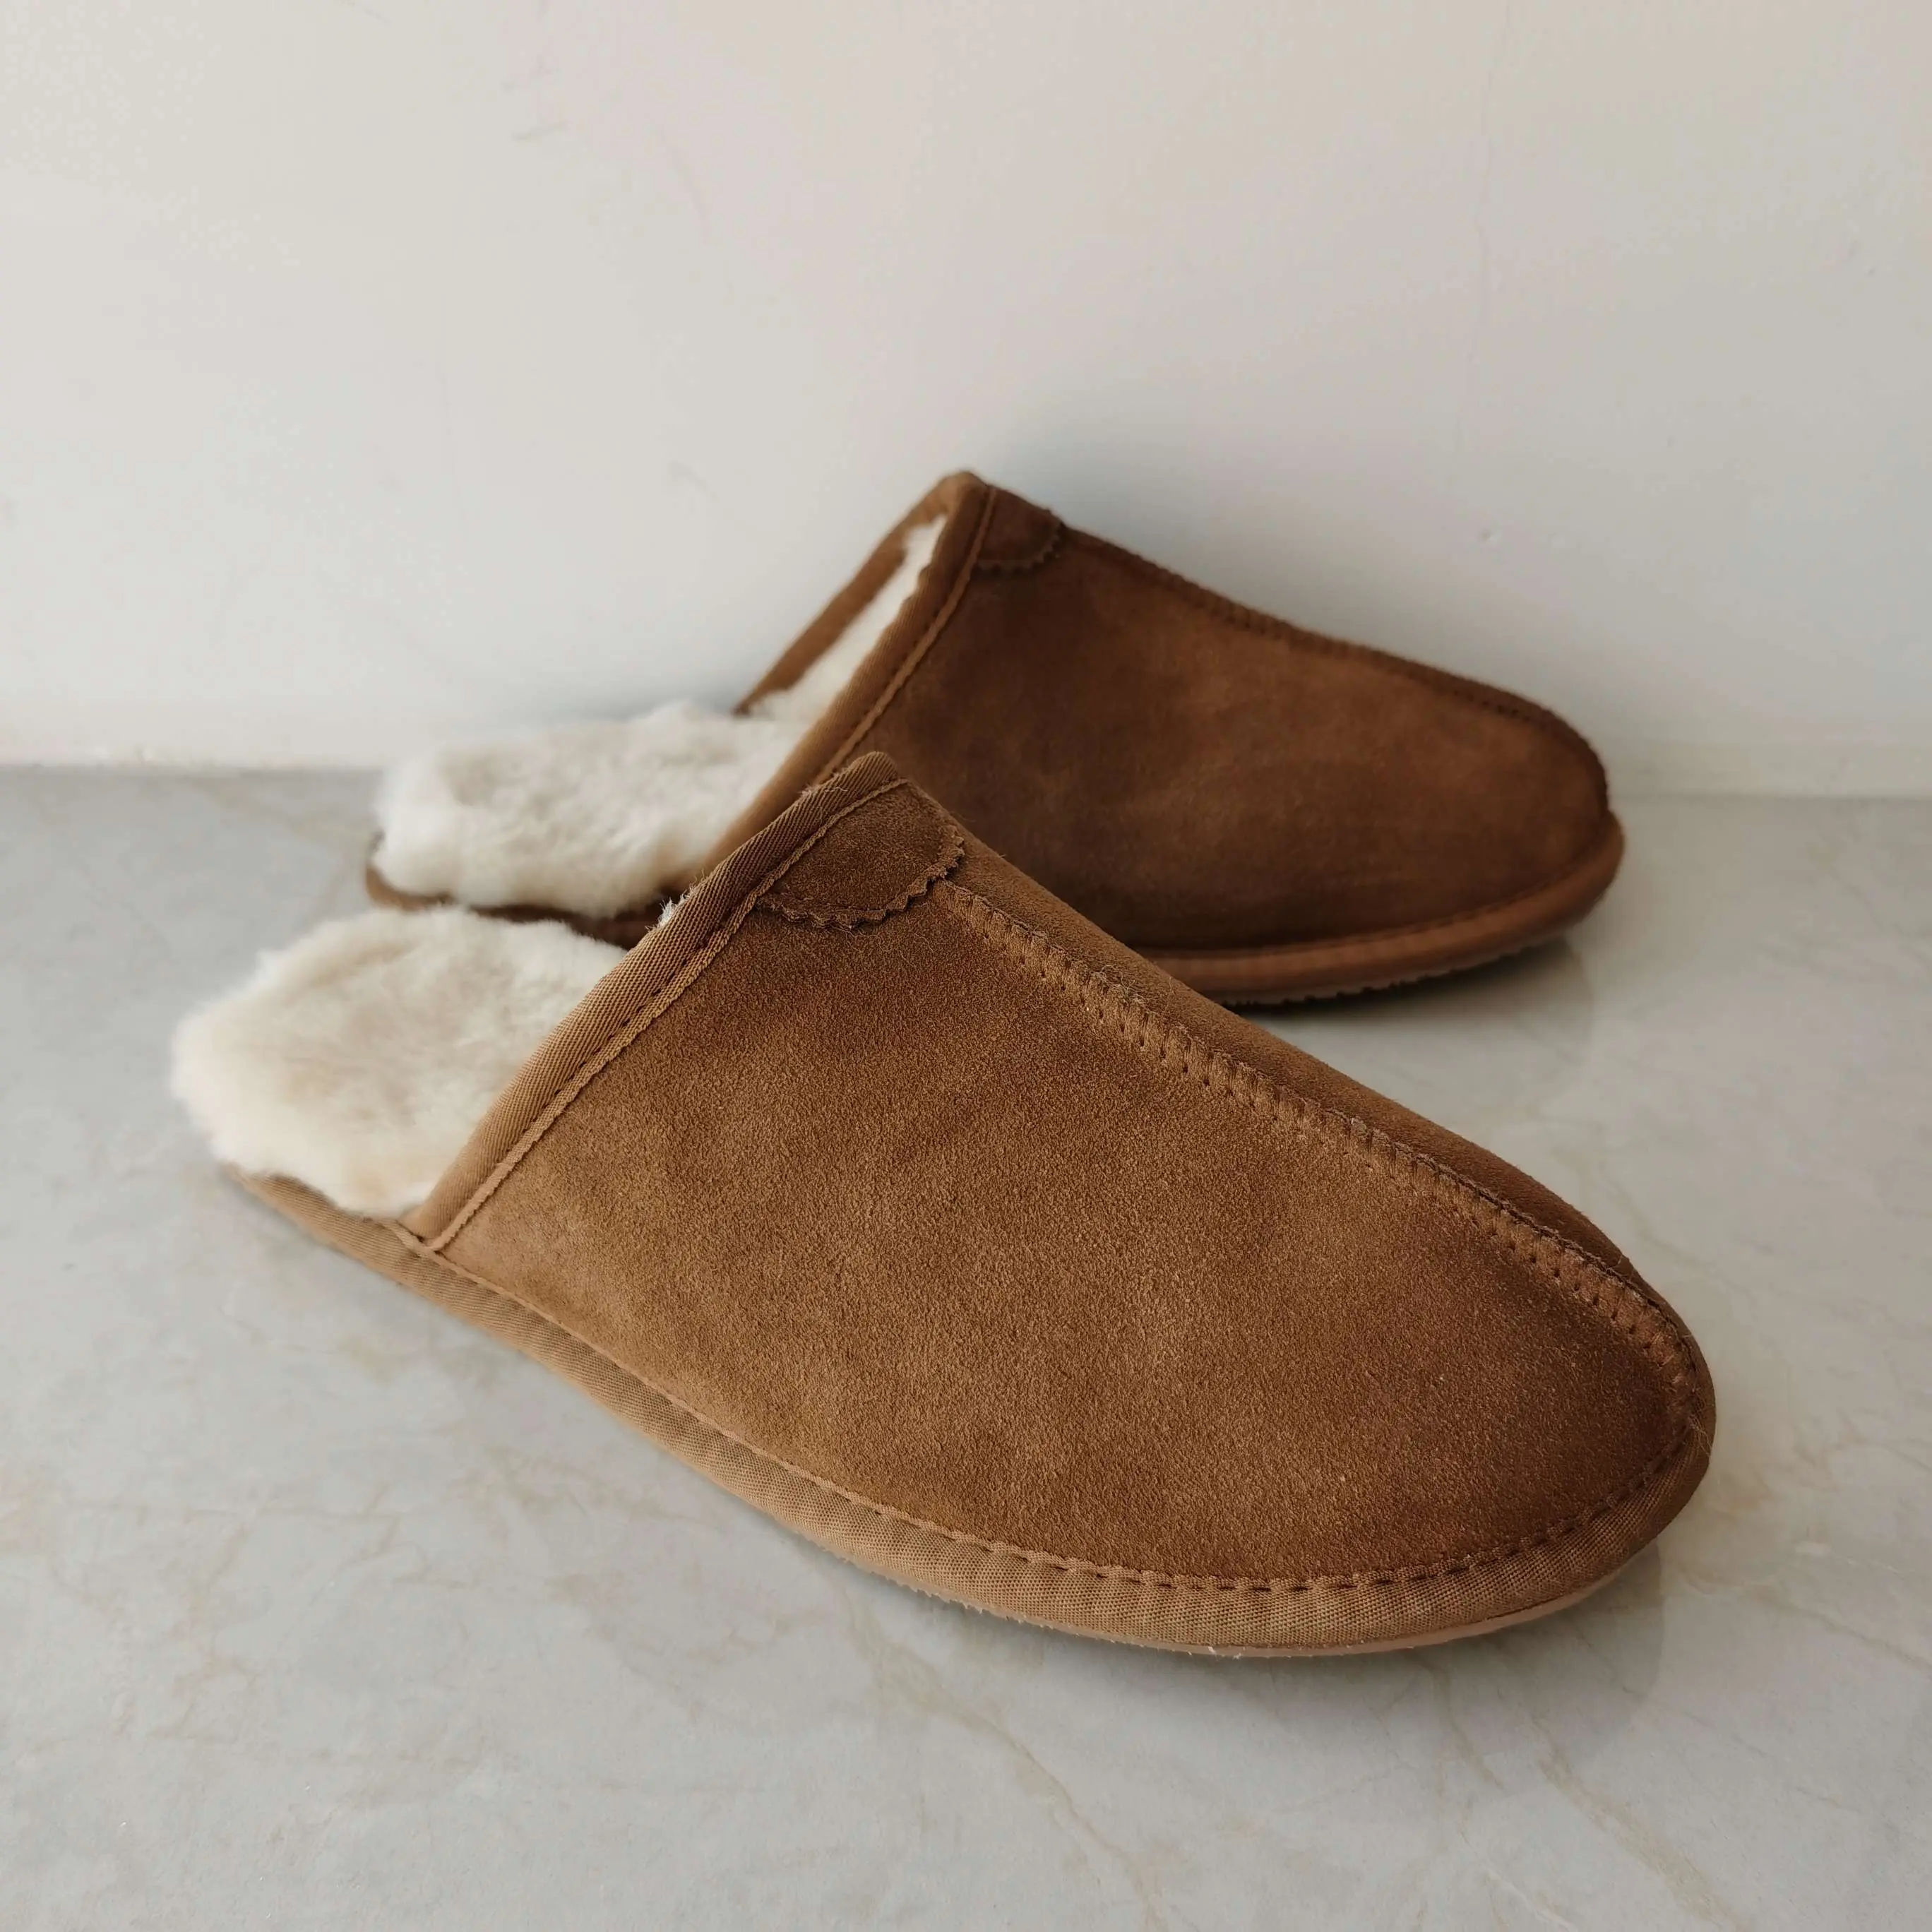 Pantoufles de maison moelleuses Vente en gros de sandales d'intérieur au design classique Chaussures d'hiver chaudes en peau de mouton australienne authentique pour femmes